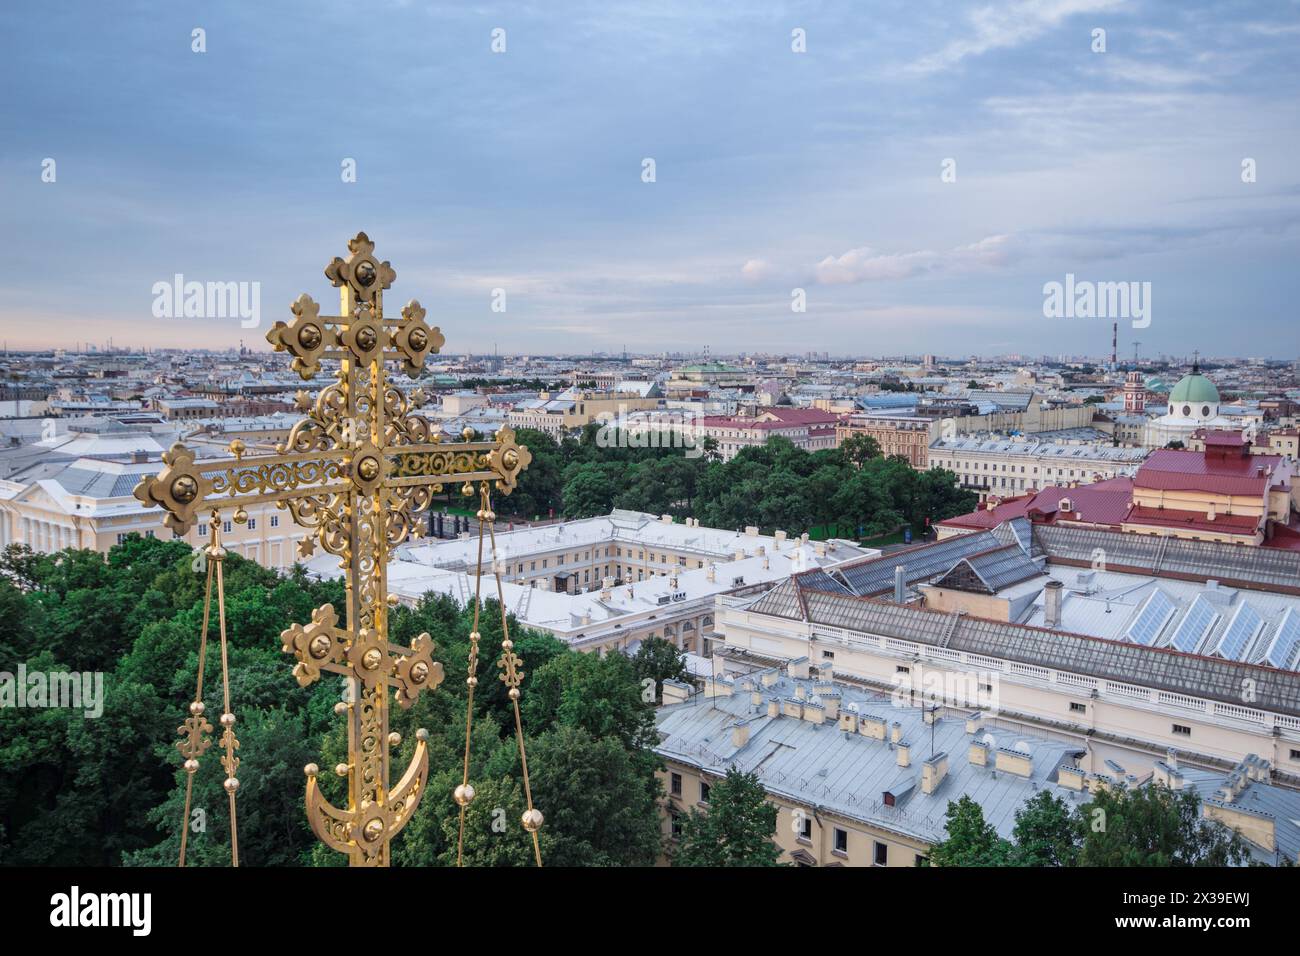 Croce dorata della cattedrale di Spas-na-krovi e vista serale di St Pietroburgo, Russia Foto Stock